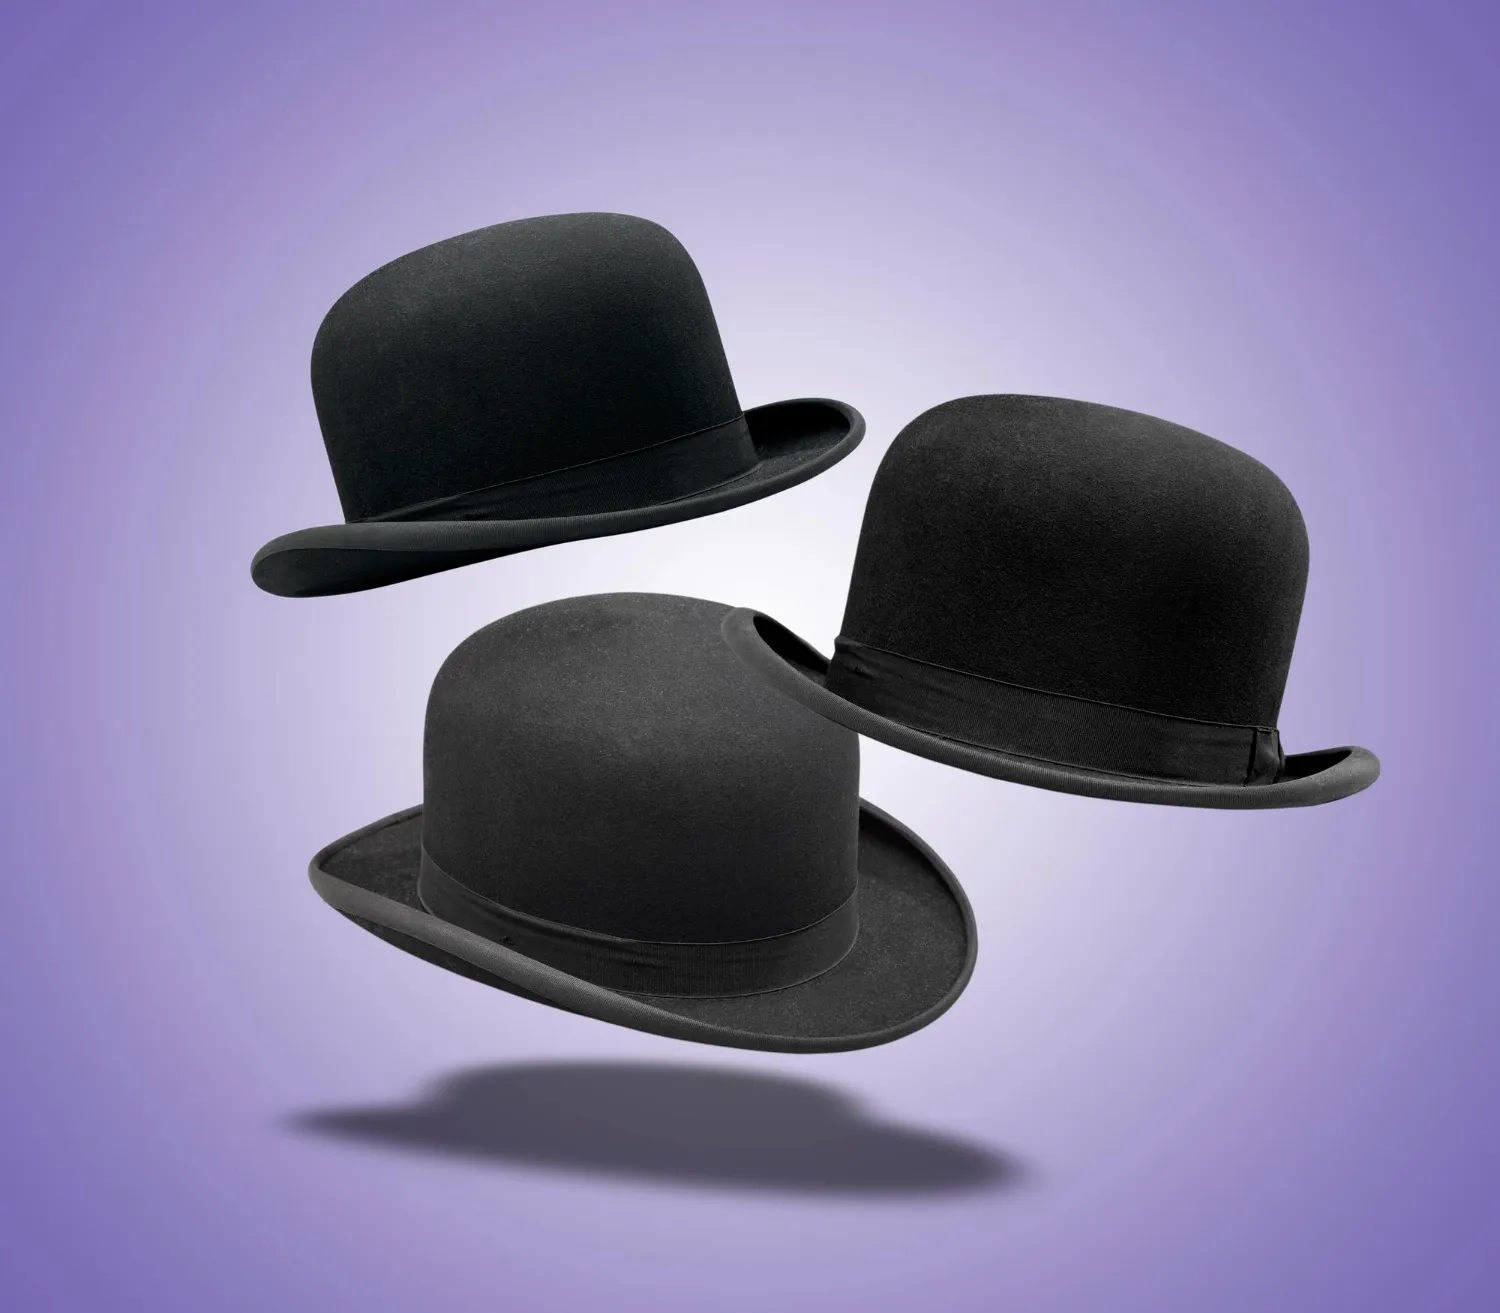 Floating set of stylish black bowler hat